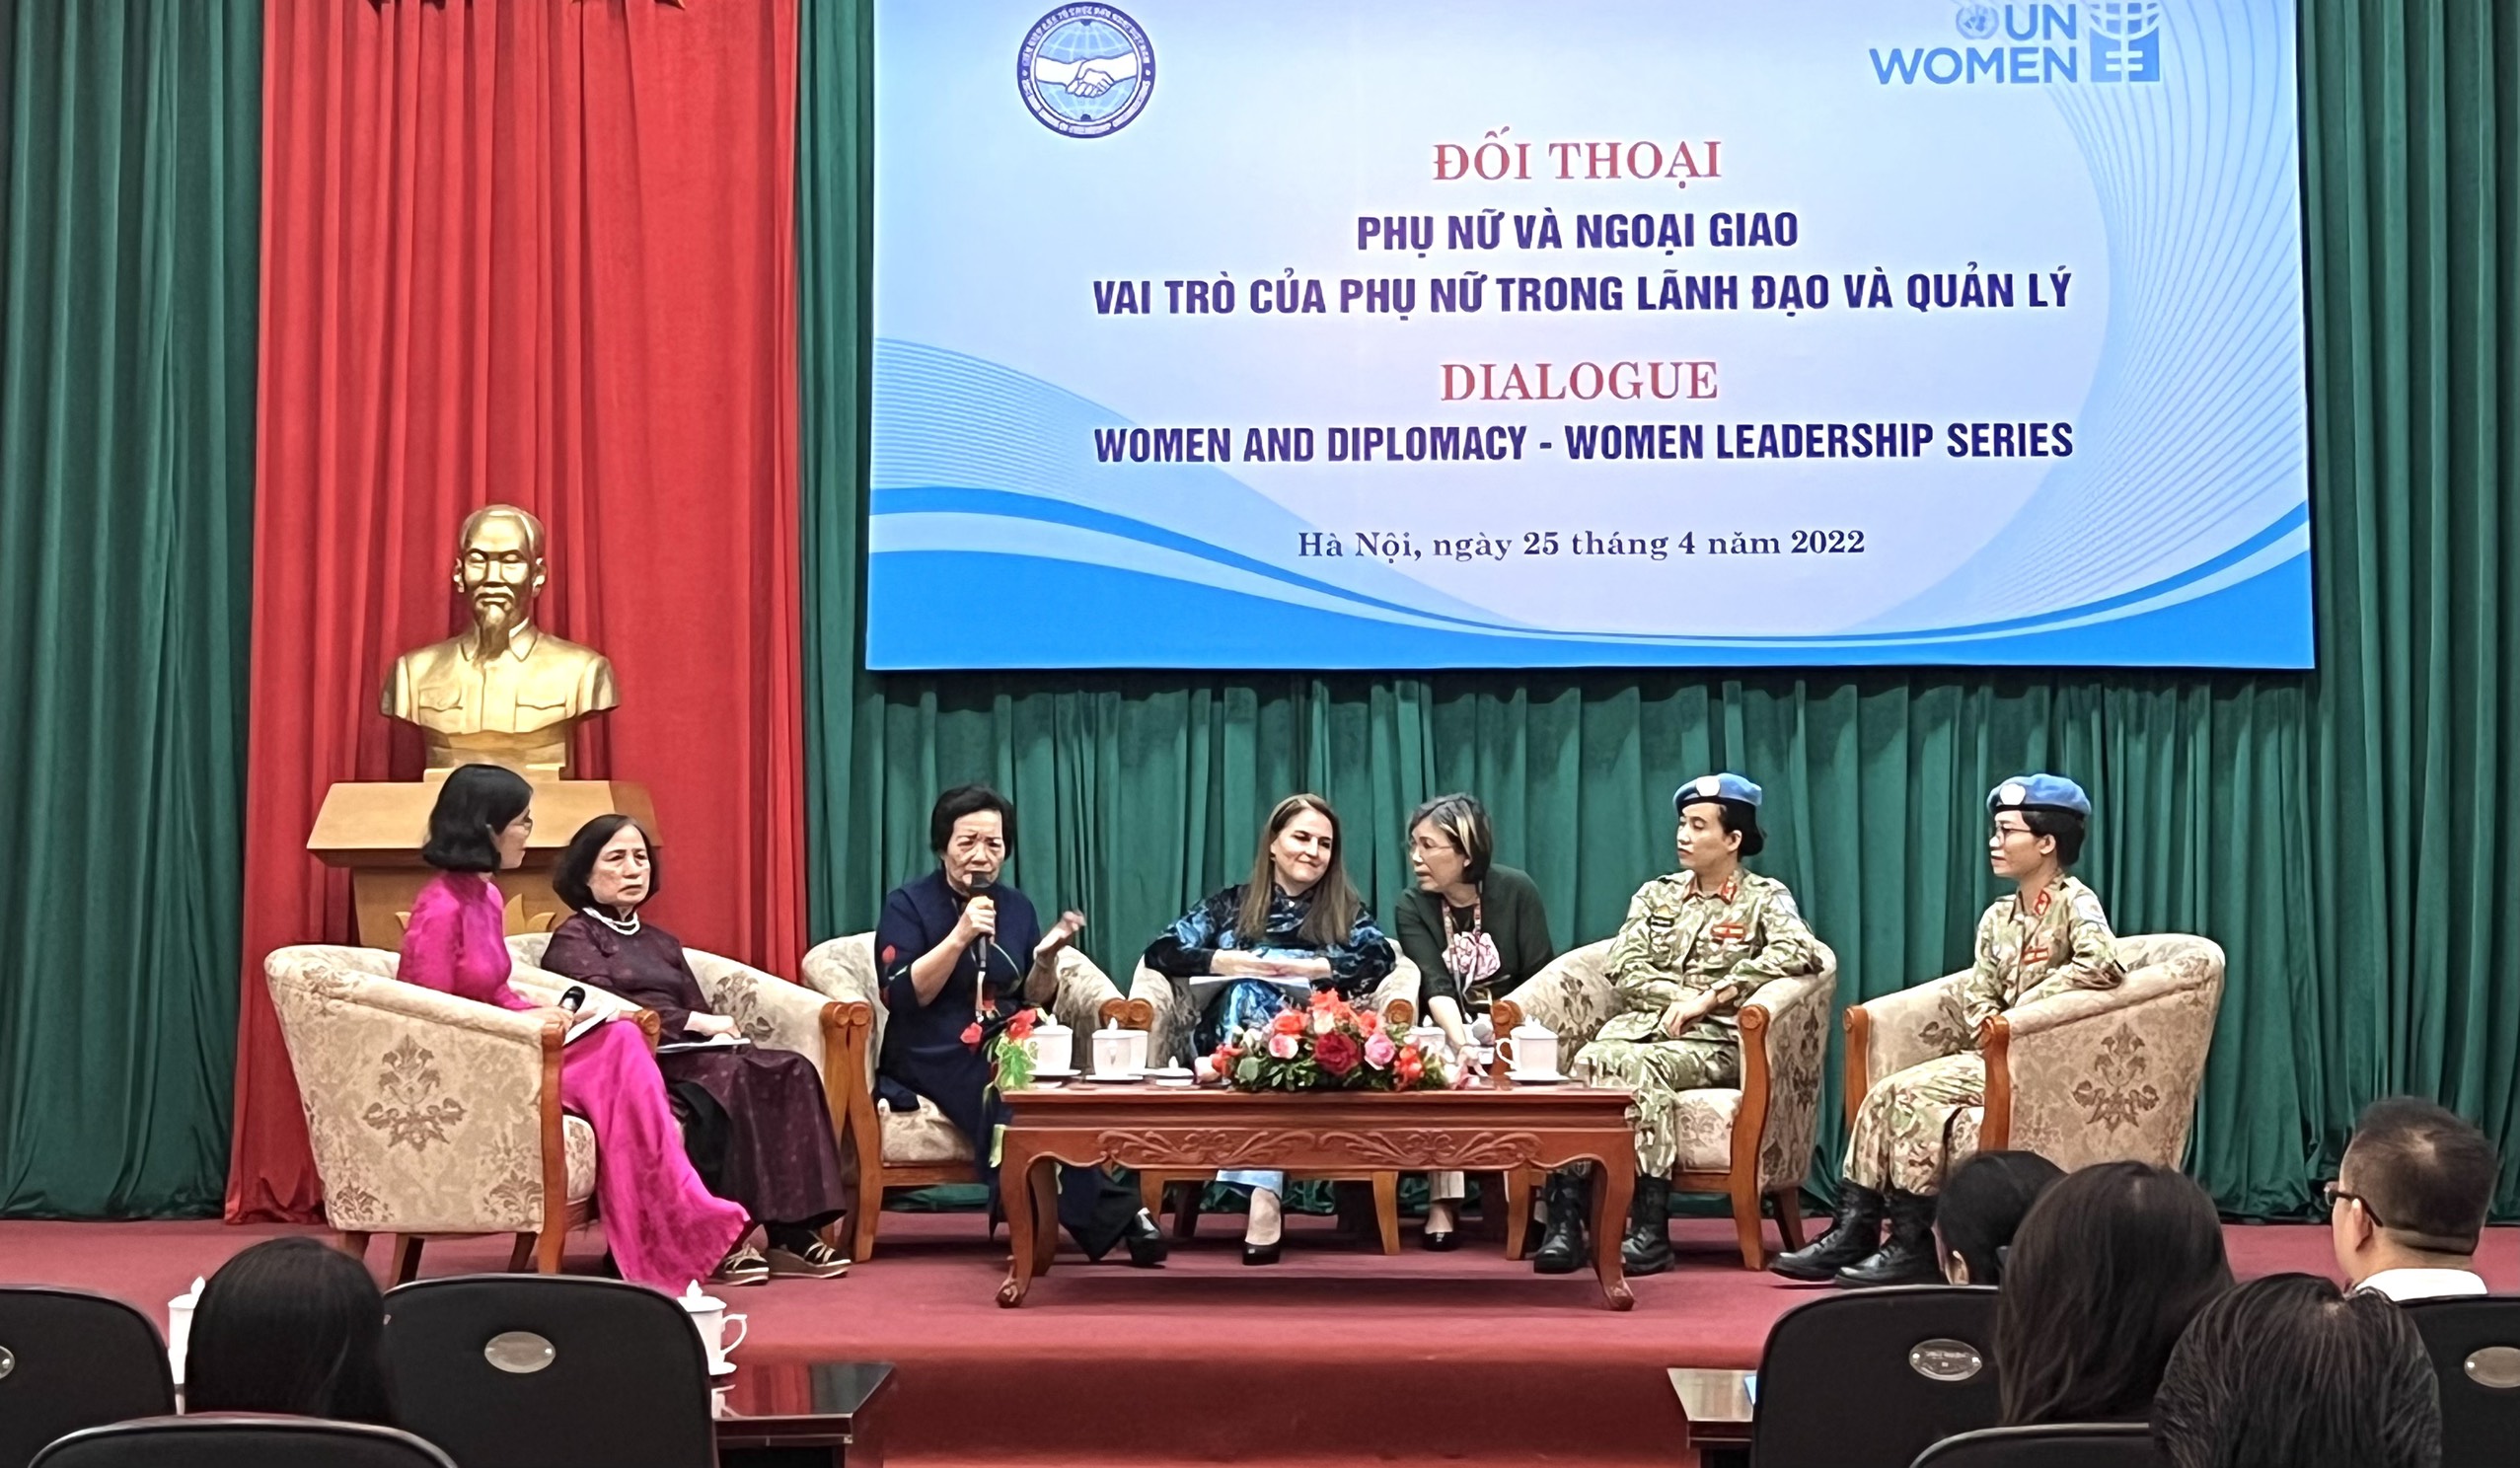 Phụ nữ và ngoại giao - Vai trò của phụ nữ trong lãnh đạo và quản lý